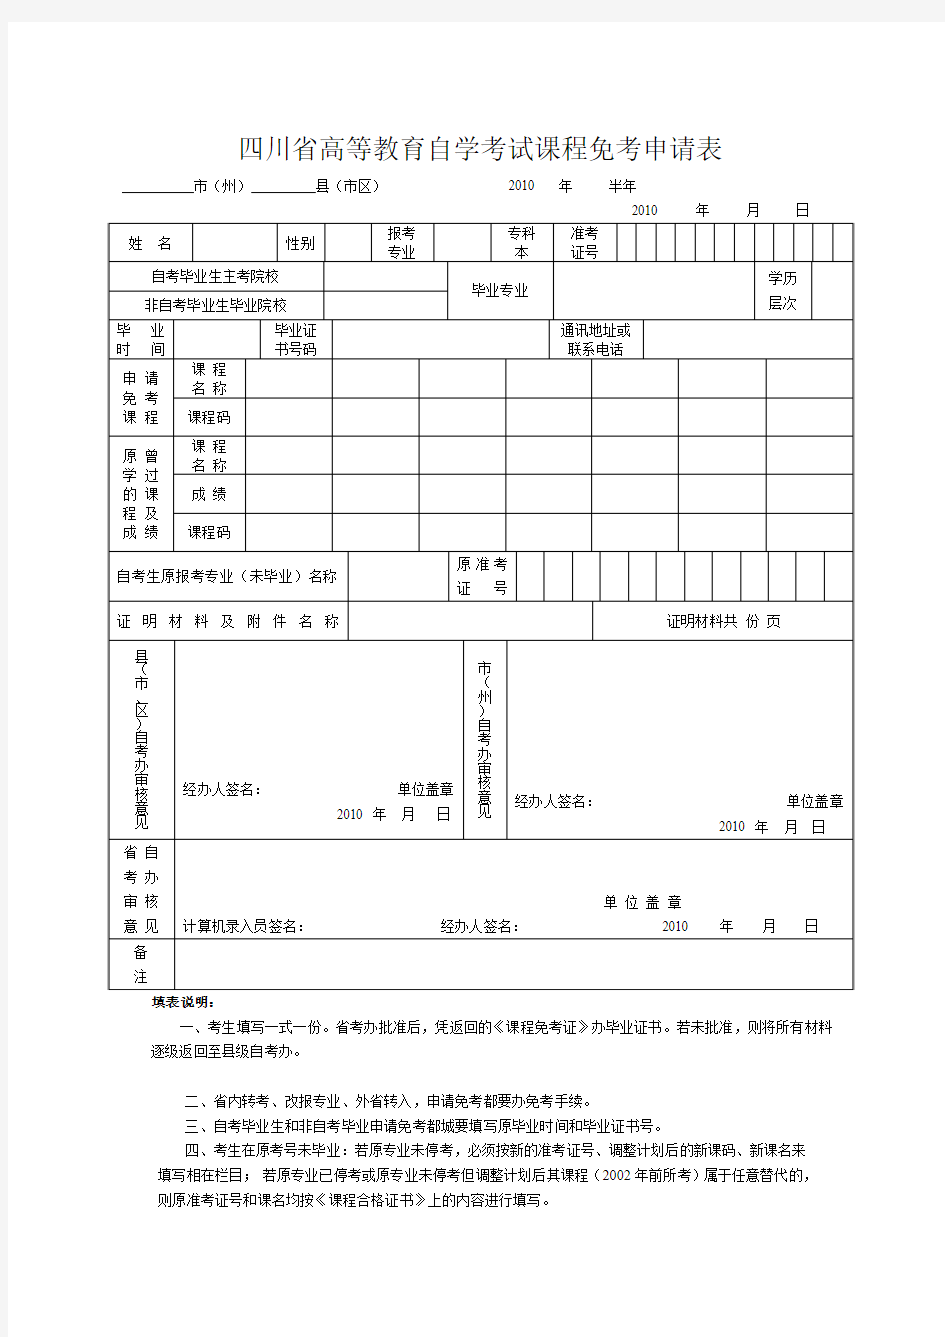 四川高等教育自学考试课程免考申请表